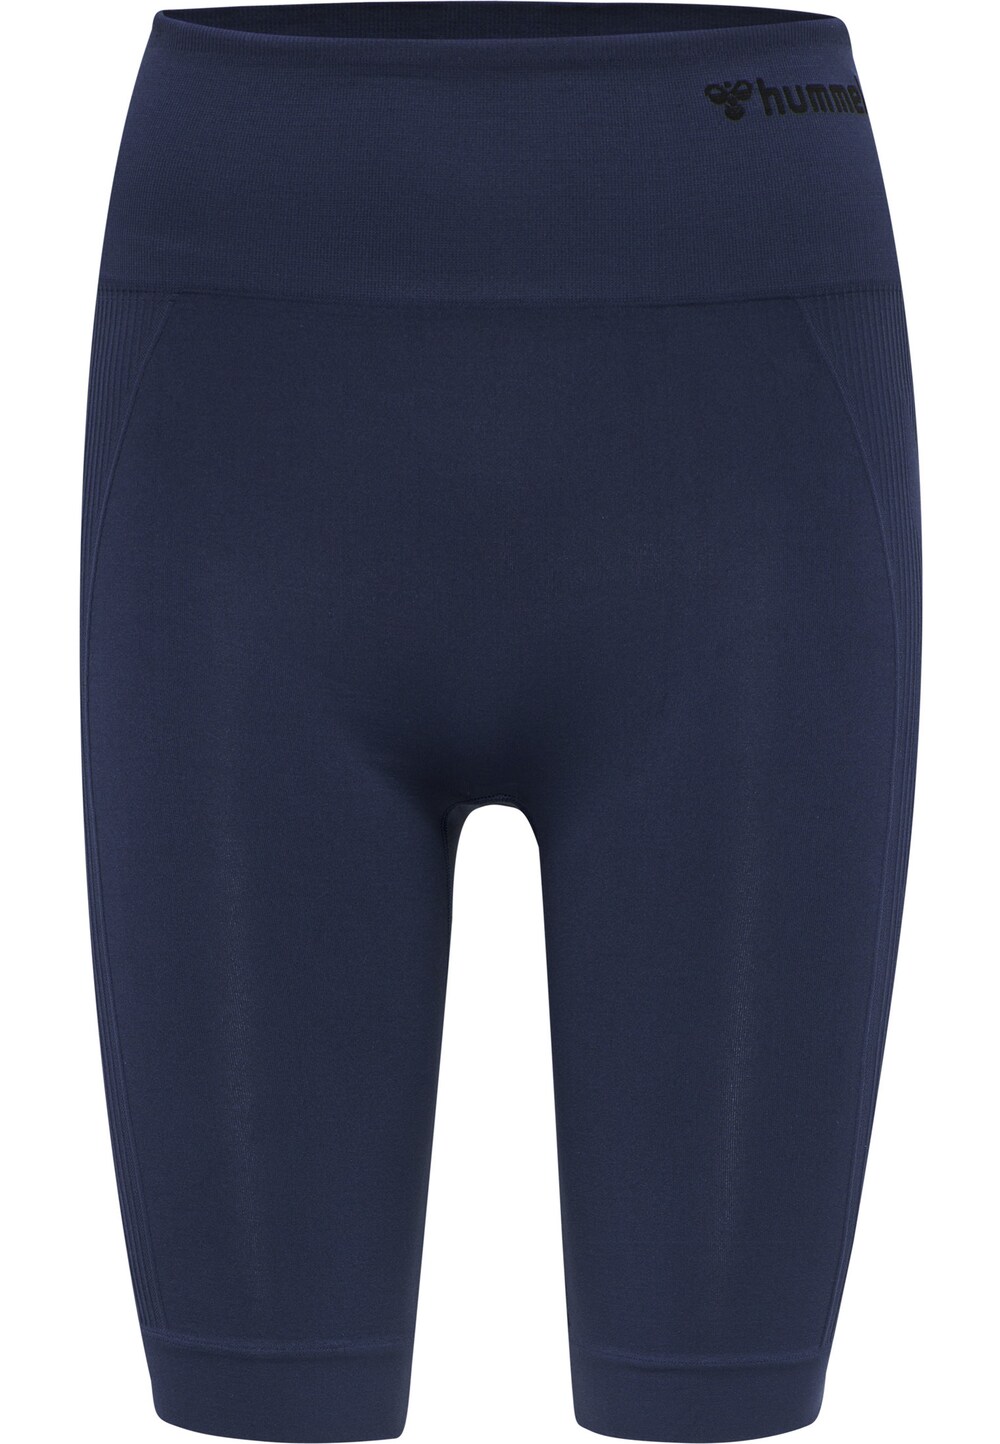 Узкие спортивные брюки Hummel Tif, темно-синий узкие спортивные брюки normani синий